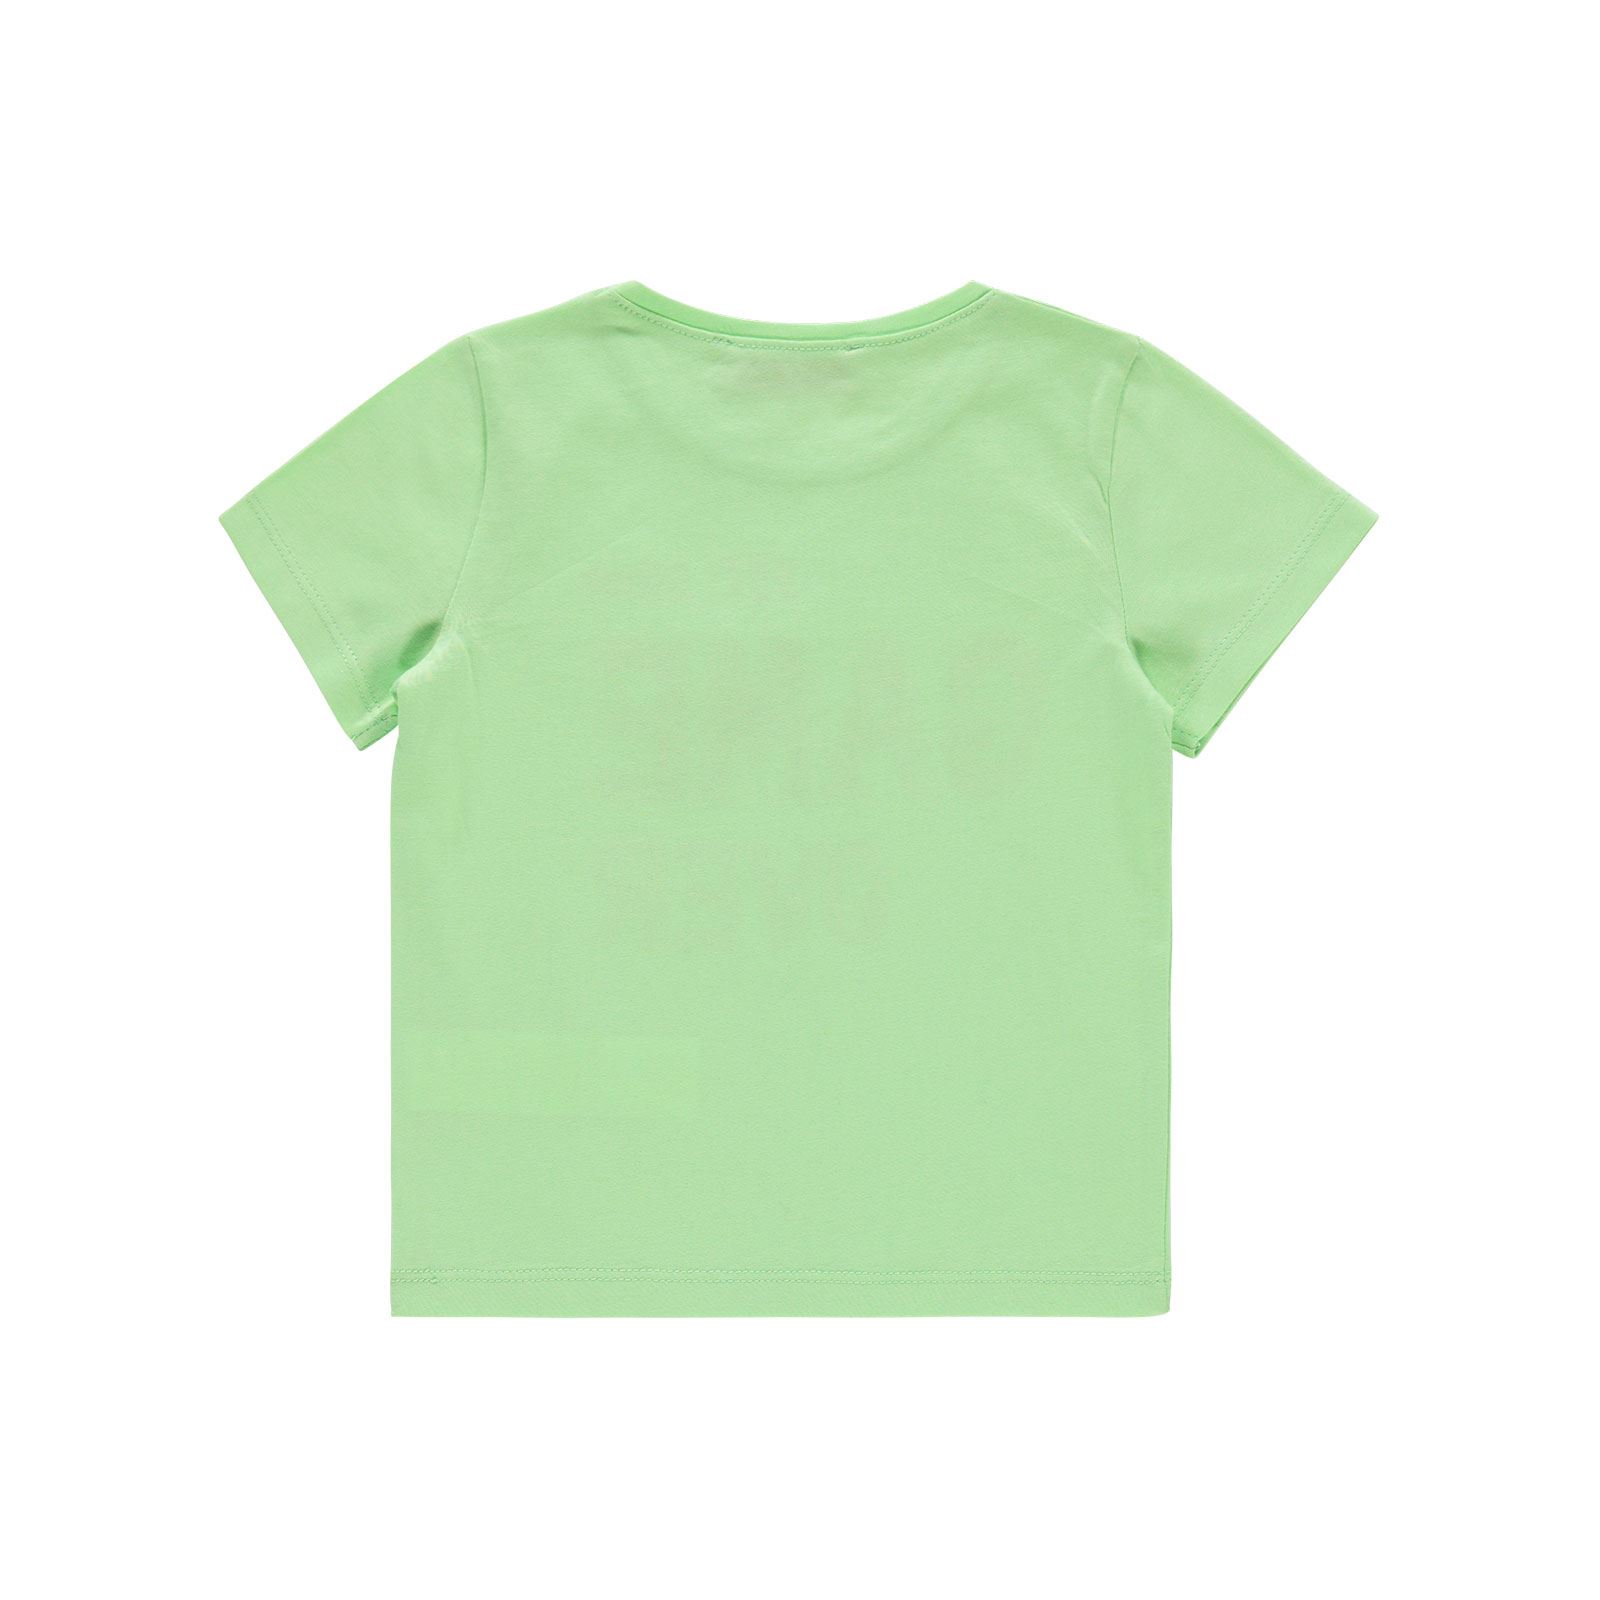 Small Socıety Erkek Çocuk Tişört 2-7 Yaş Açık Yeşil